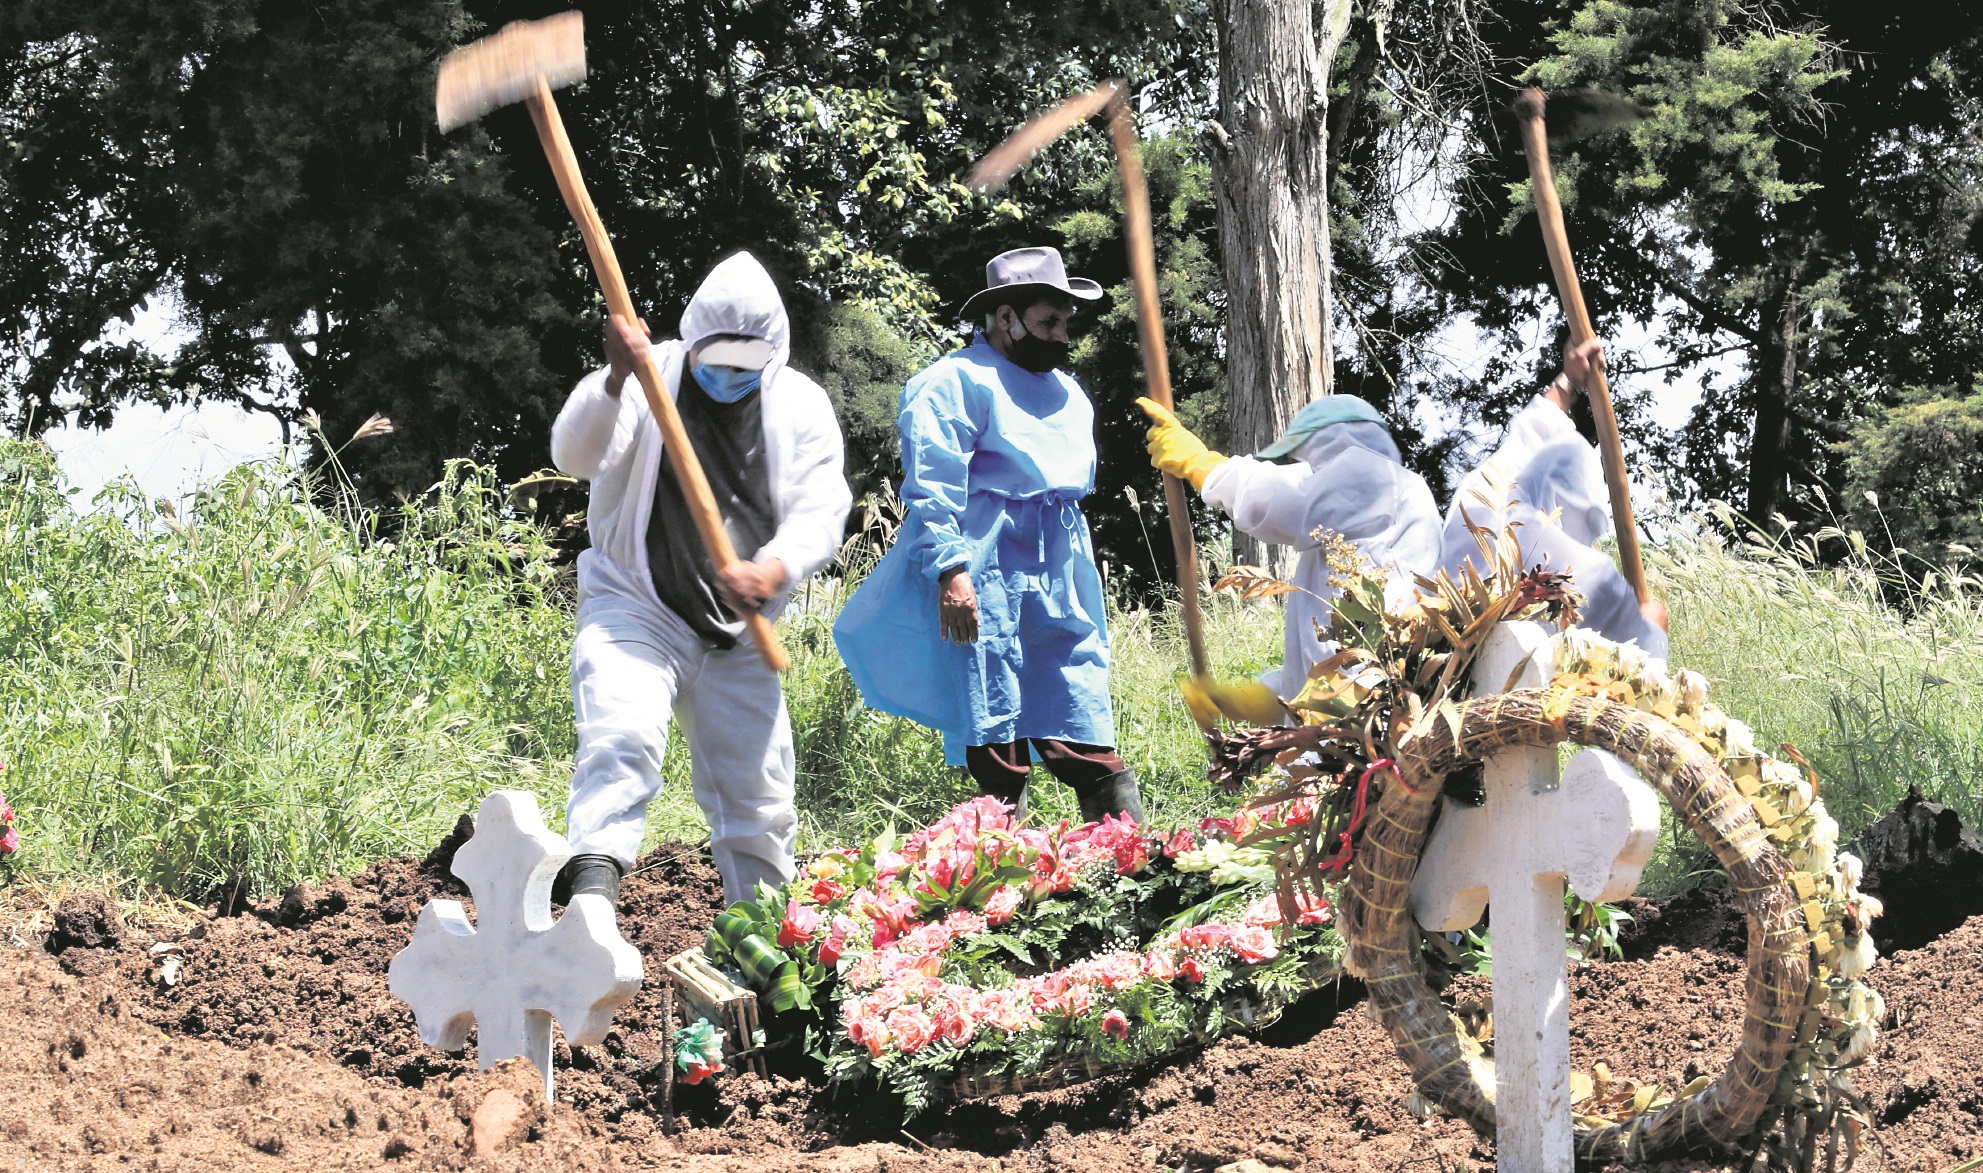 El cementerio La Verbena, en la zona 7, fue designado para enterrar a fallecidos por covid-19, enfermedad que ha dejado más de 20 mil fallecidos desde que llegó al país. (Foto Prensa Libre: Hemeroteca PL)